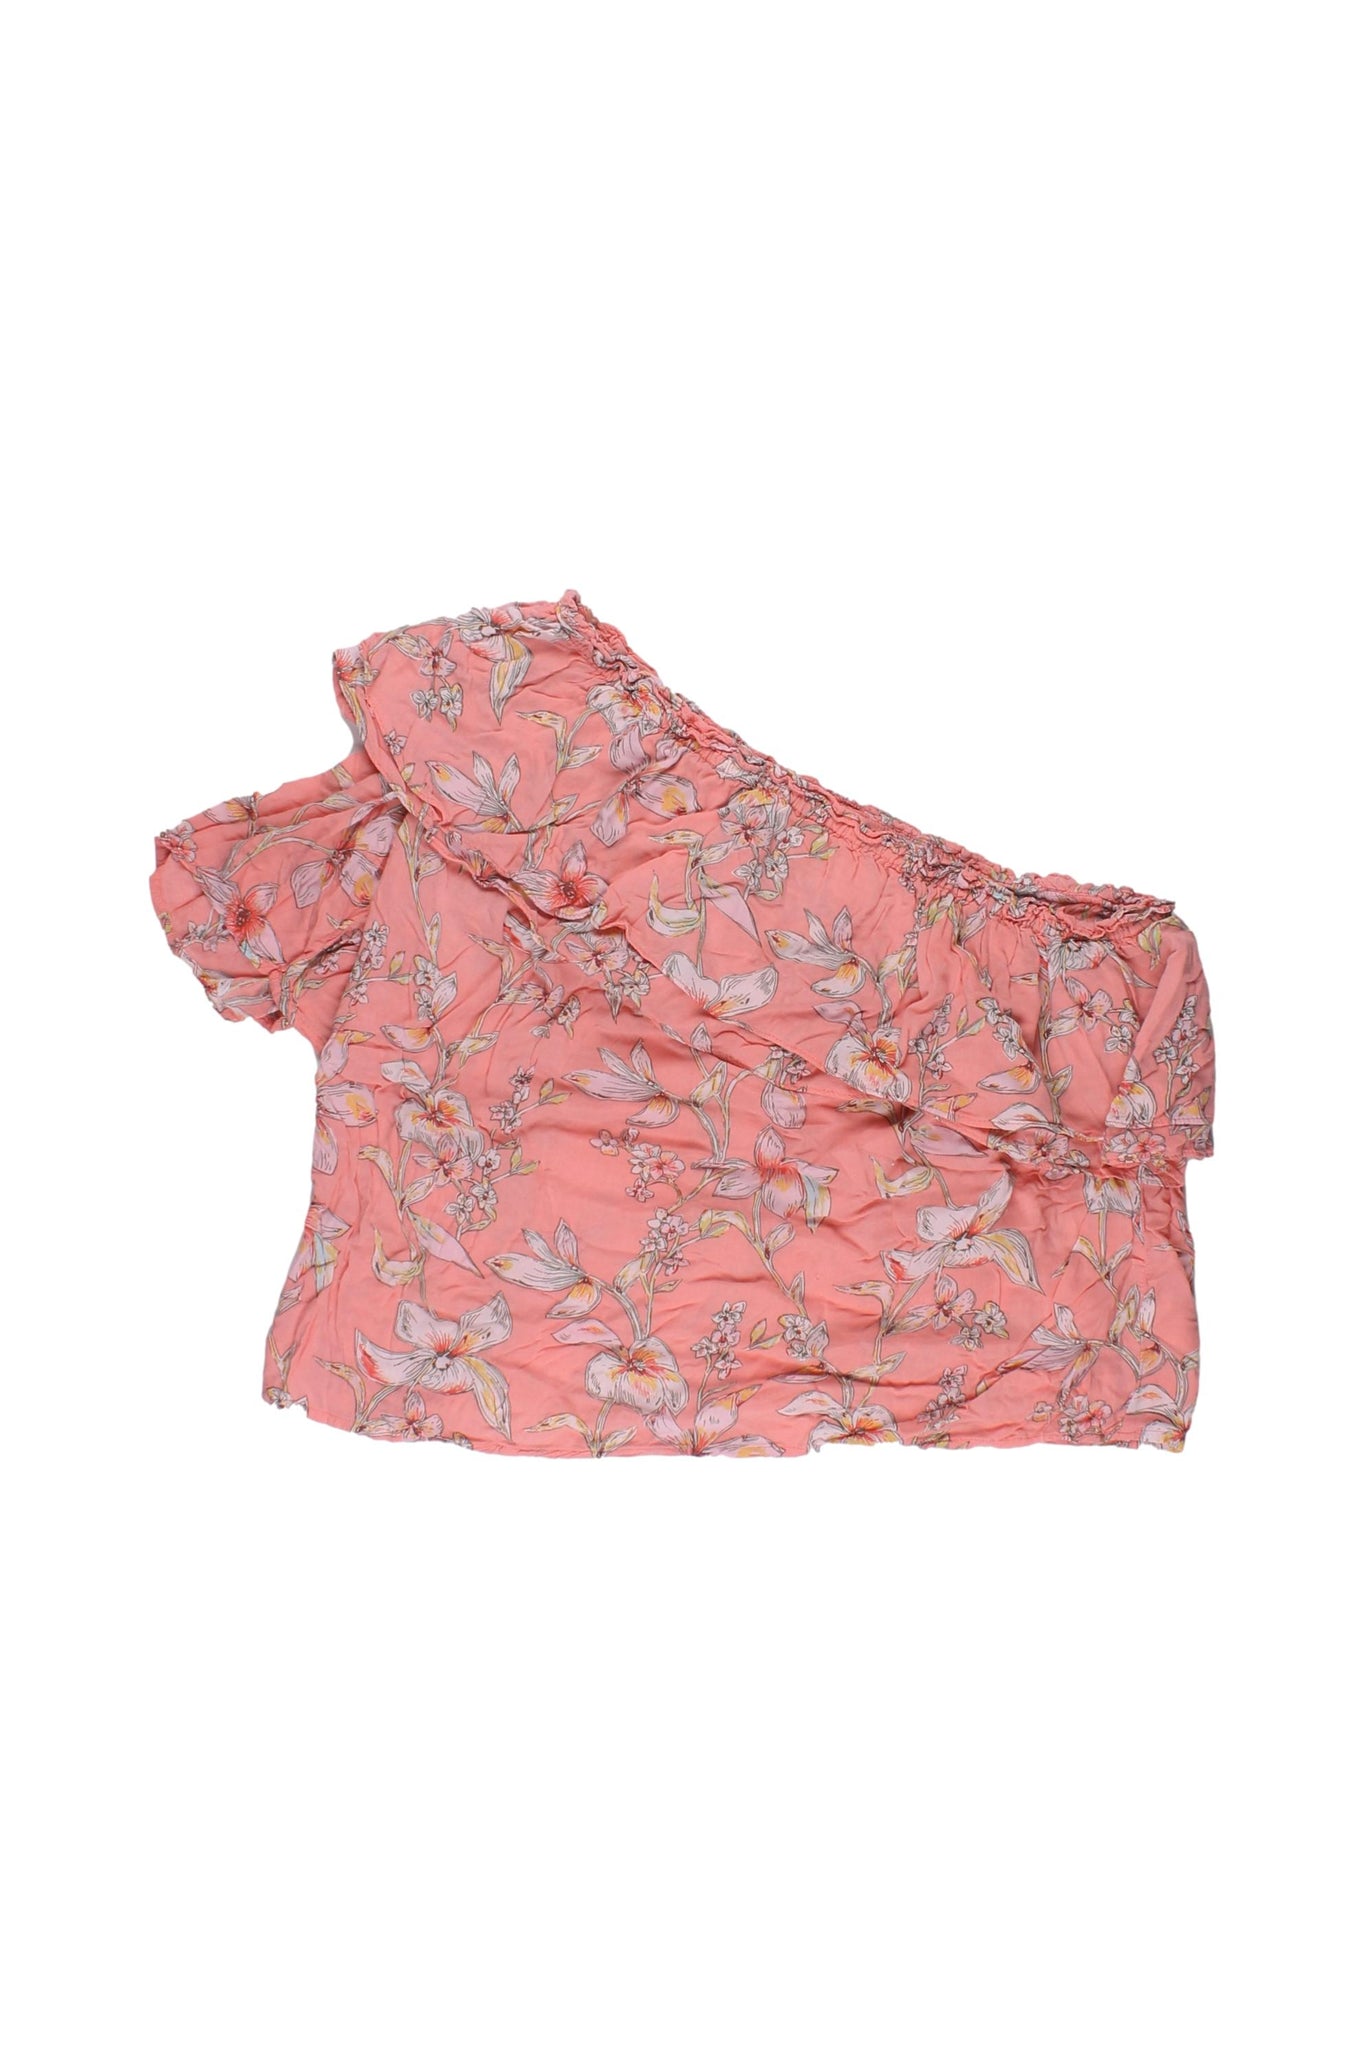 A NEW DAY - Blusa One Shoulder Color Rosa Con Estampado De Flores